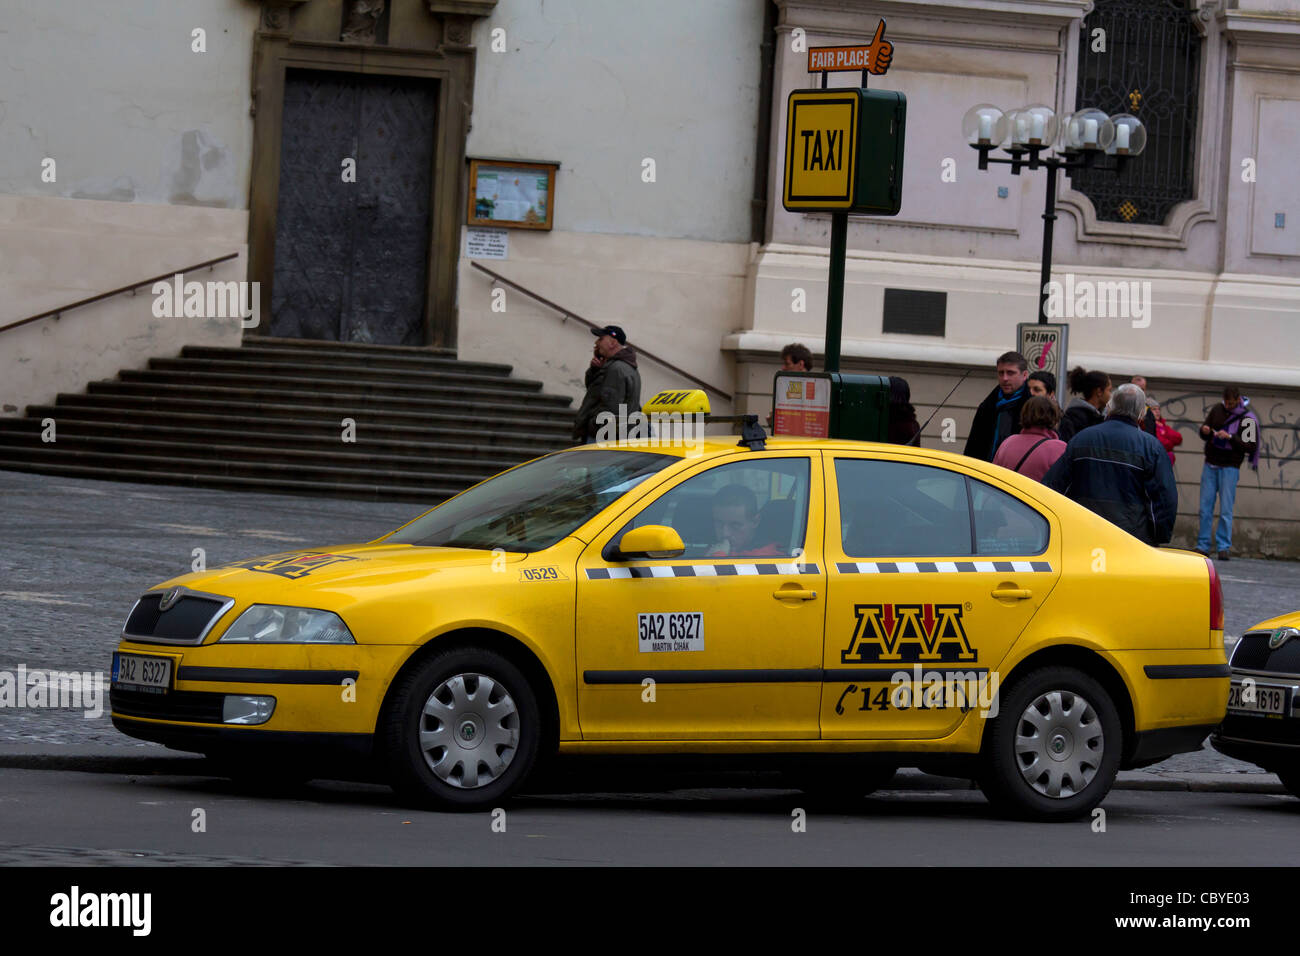 AAA yellow taxi cab taxi, Prague, Czech republic Stock Photo - Alamy